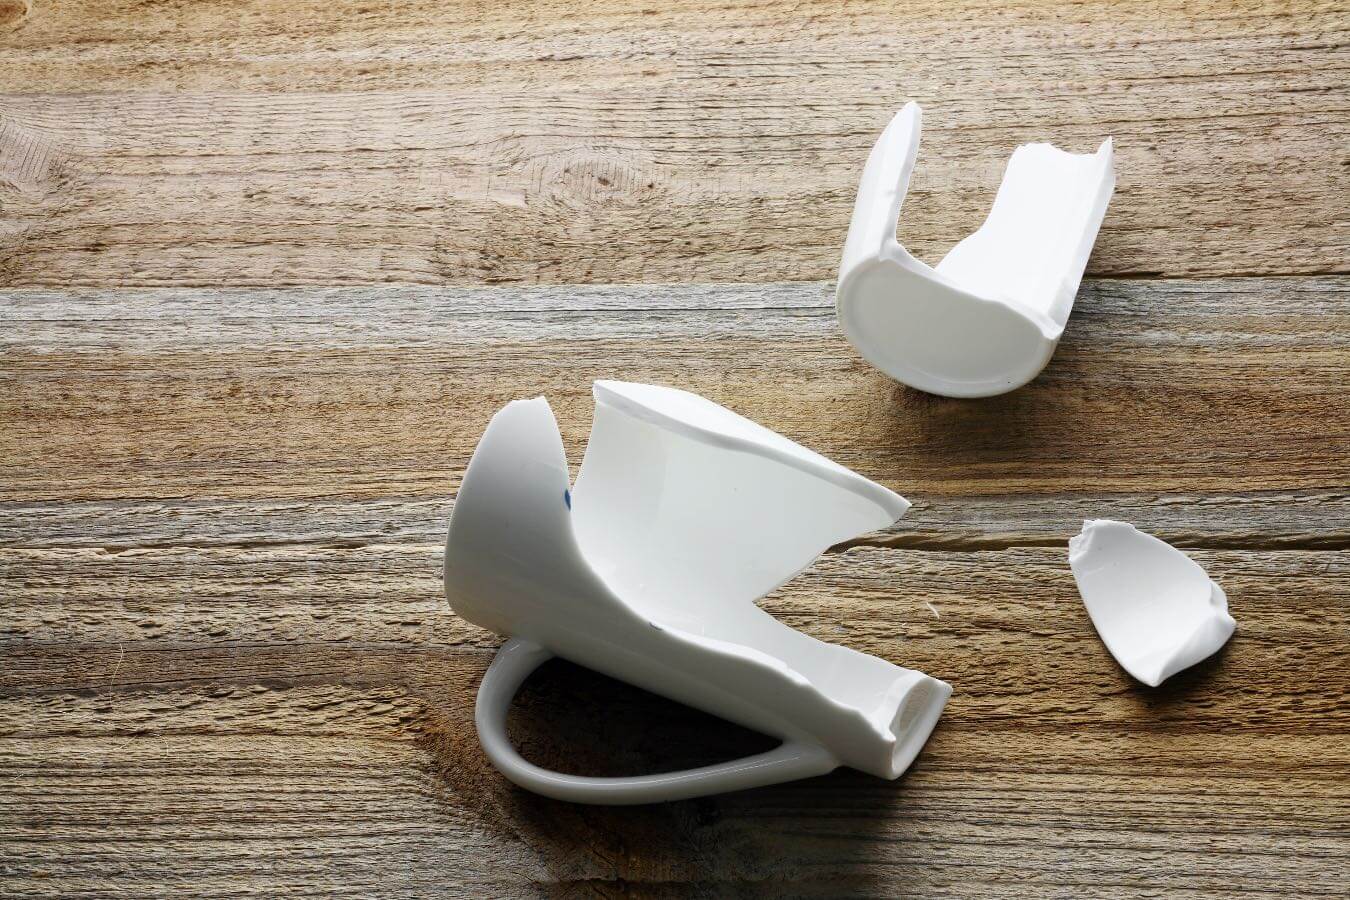 Gdzie wyrzucić rozbite naczynia? Wiele osób popełnia ten błąd, a stłuczone szklanki i talerze lądują w złym pojemniku